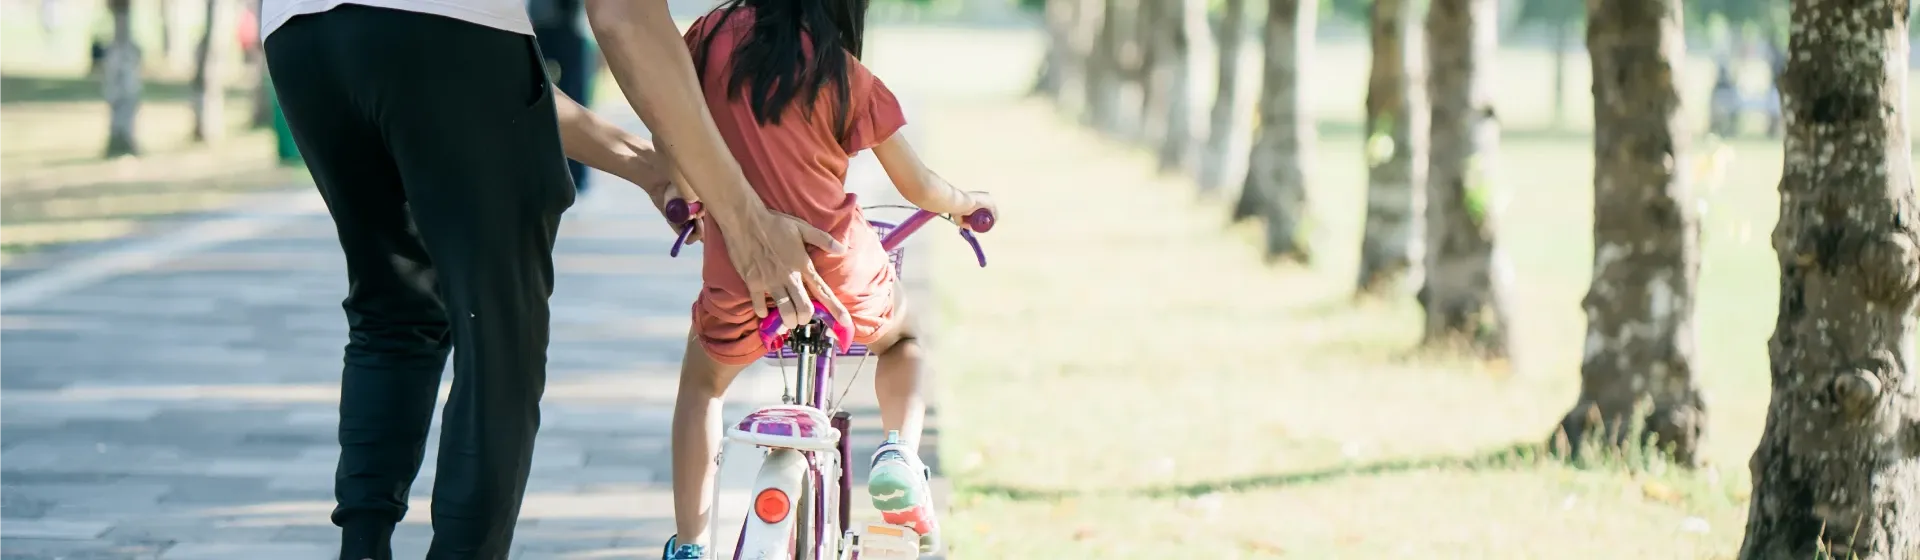 Bicicleta infantil para meninas de 3 á 7 anos na cor rosa em Promoção na  Americanas